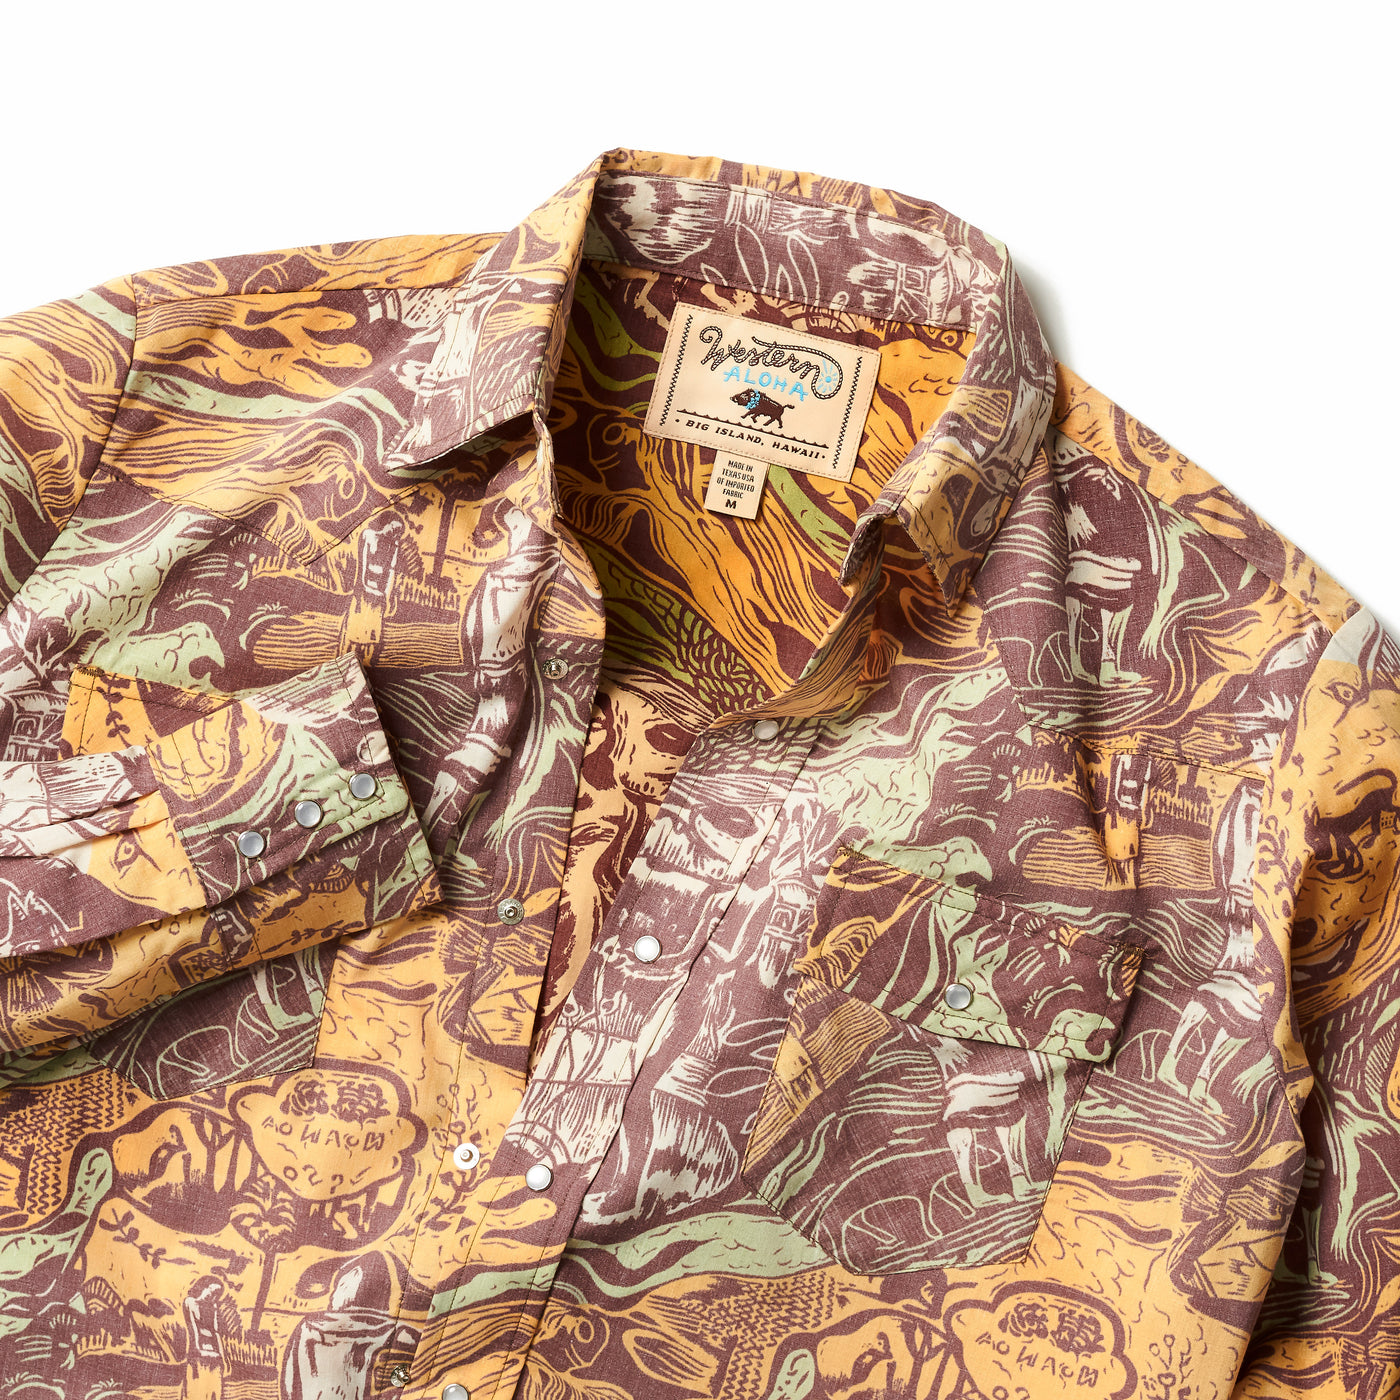 Noa Noa - Men's Long Sleeve Aloha Shirt